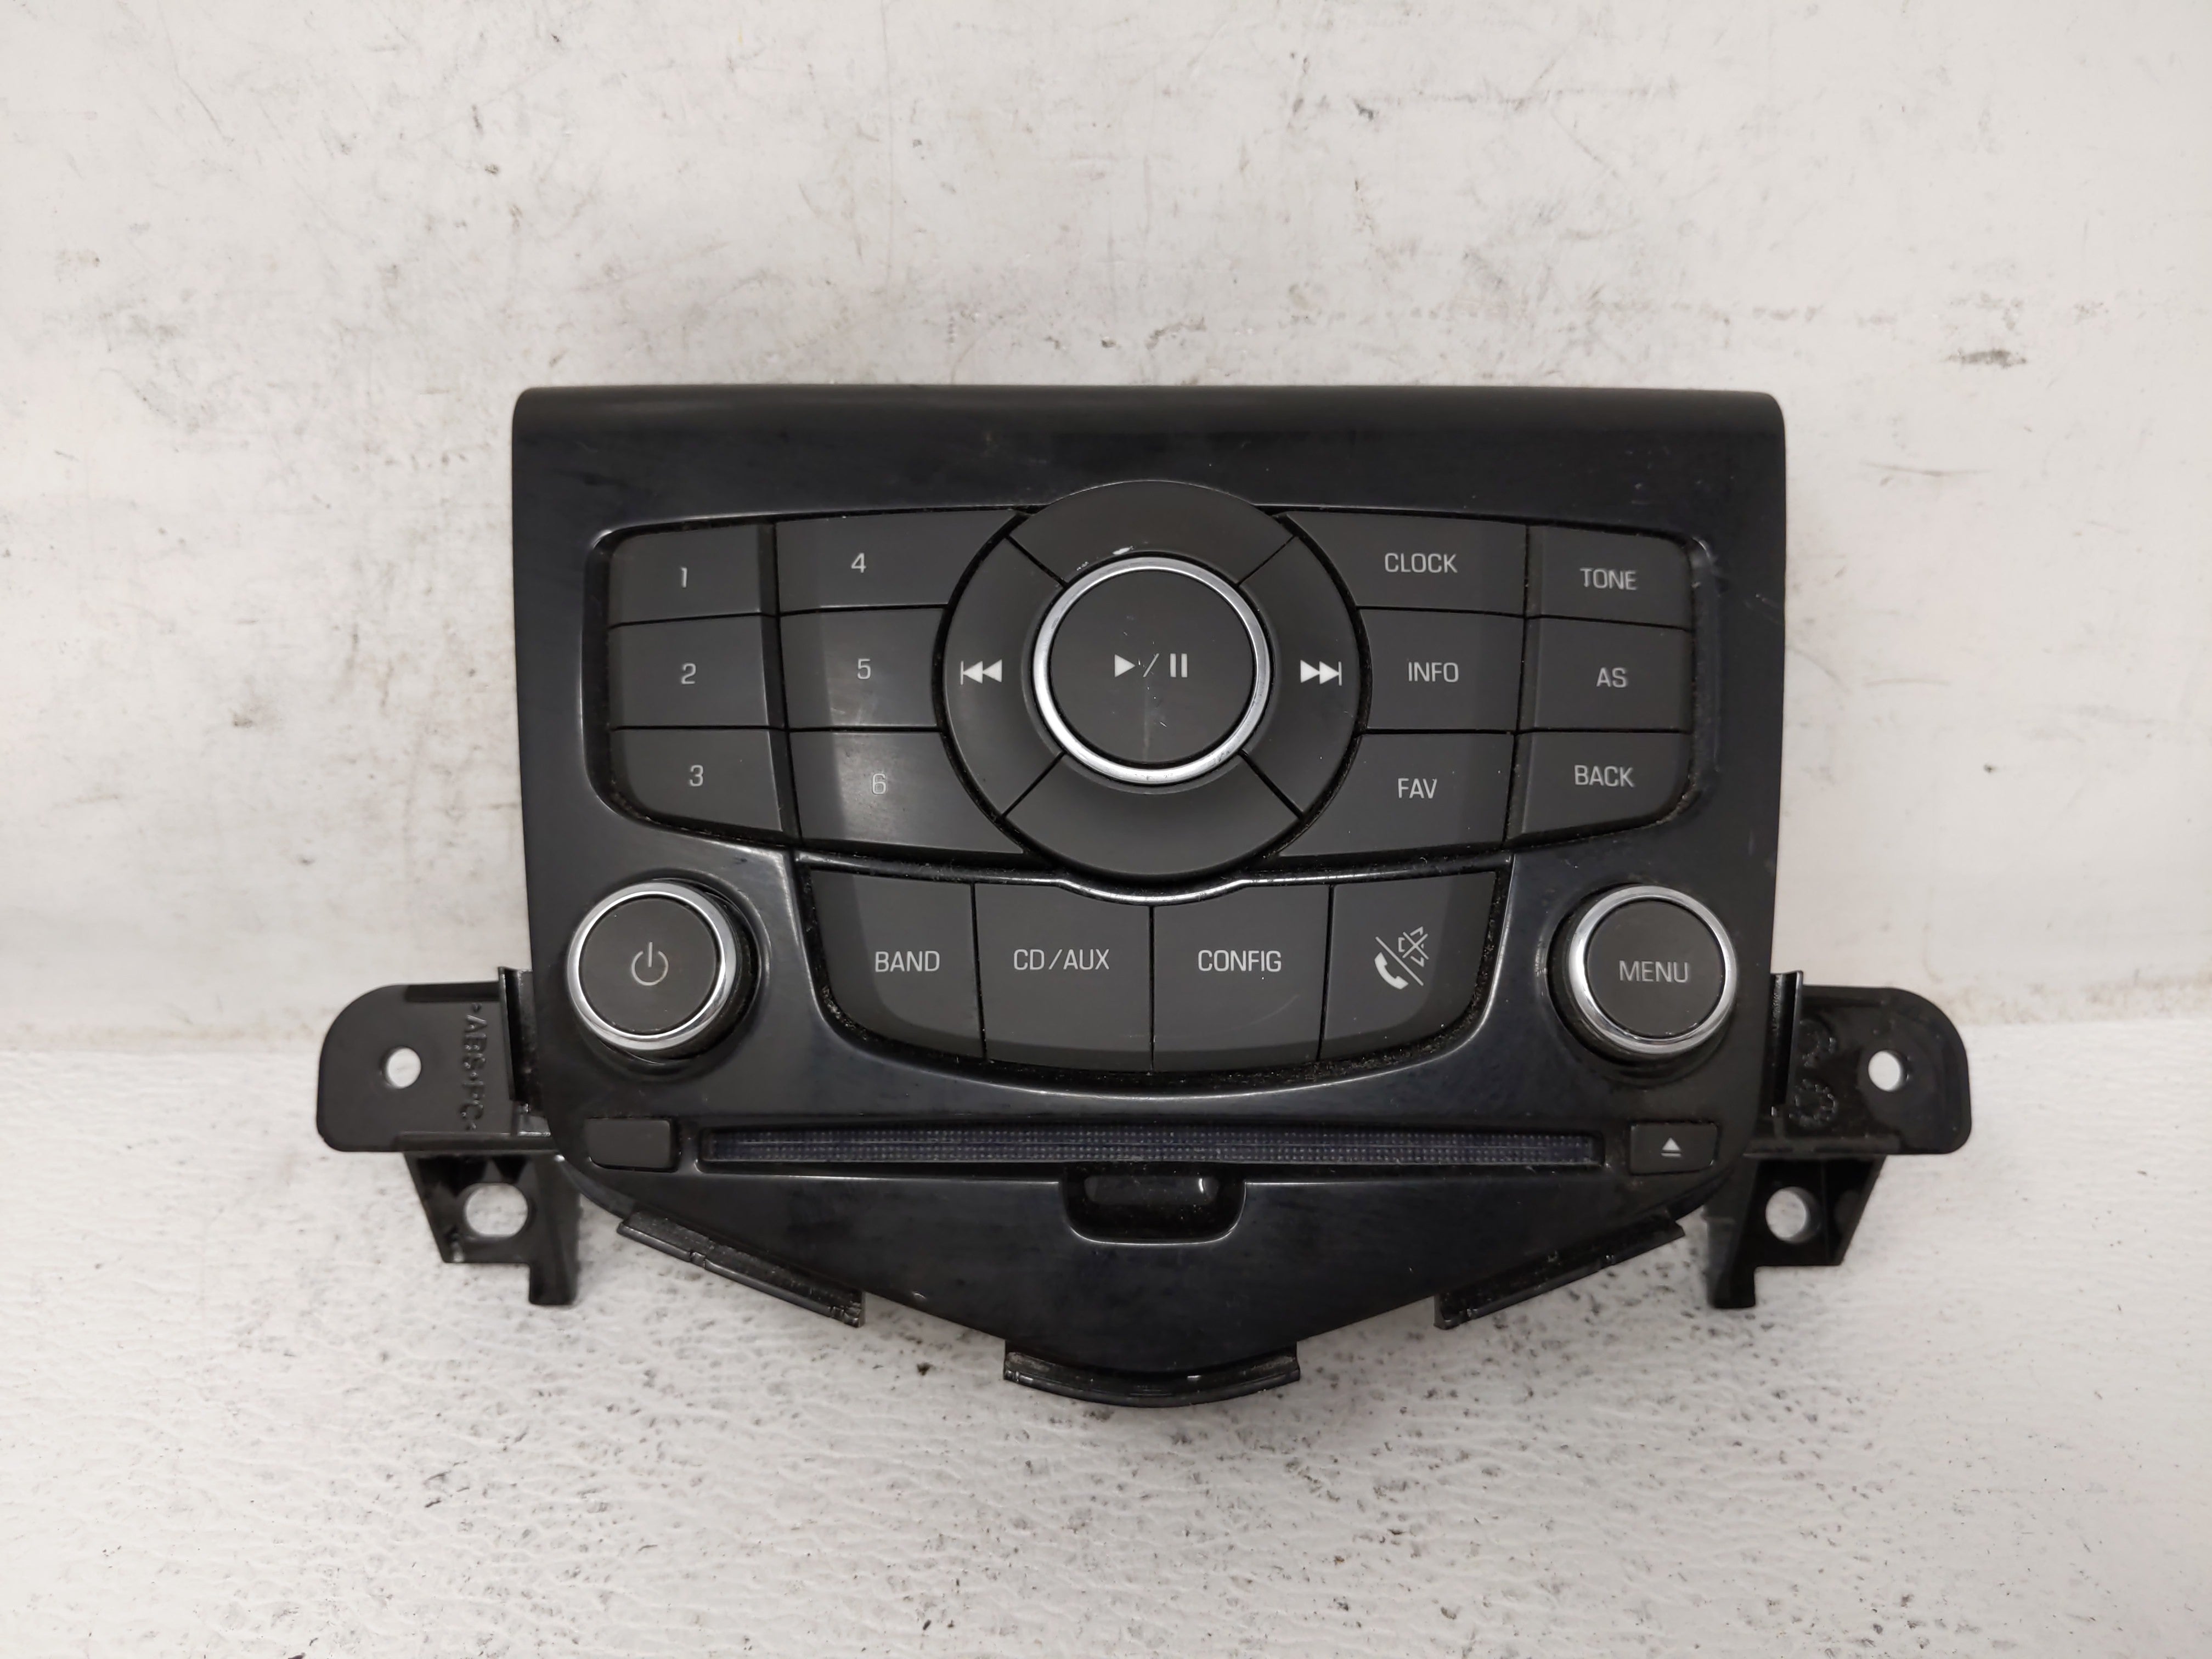 2011 Chevrolet Cruze Radio Control Panel - Oemusedautoparts1.com